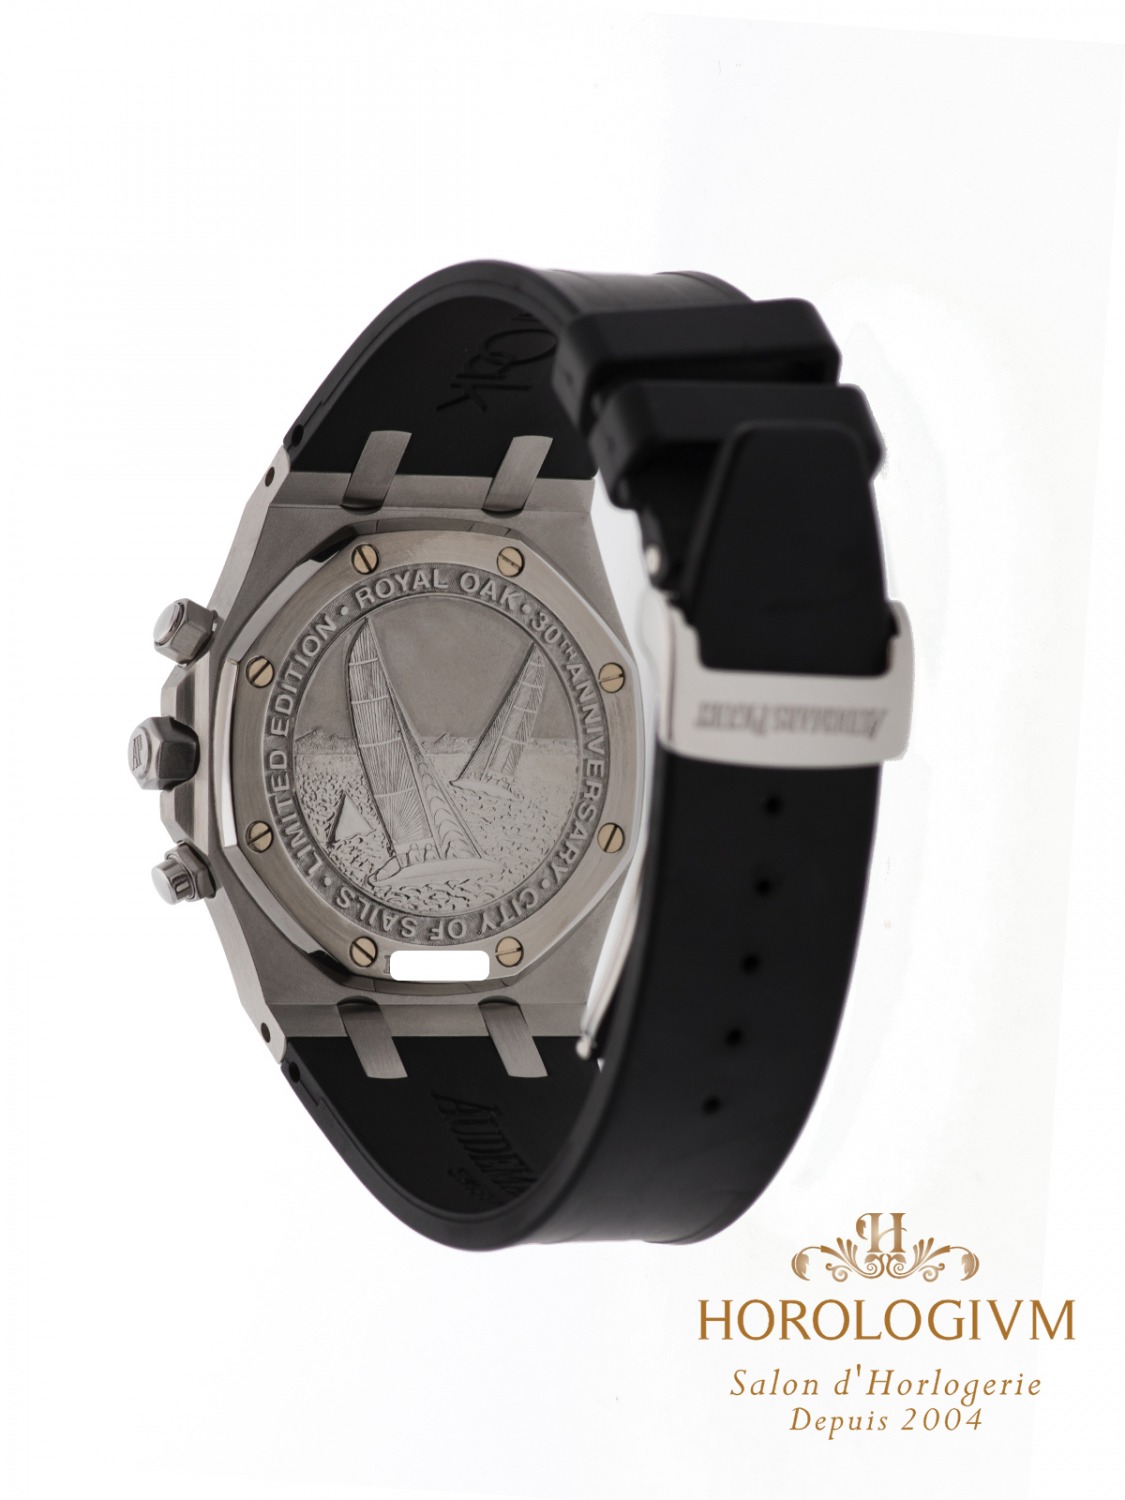 Audemars Piguet Royal Oak Chronograph 39MM City of Sails Limited Edition 1250 pcs watch, silver